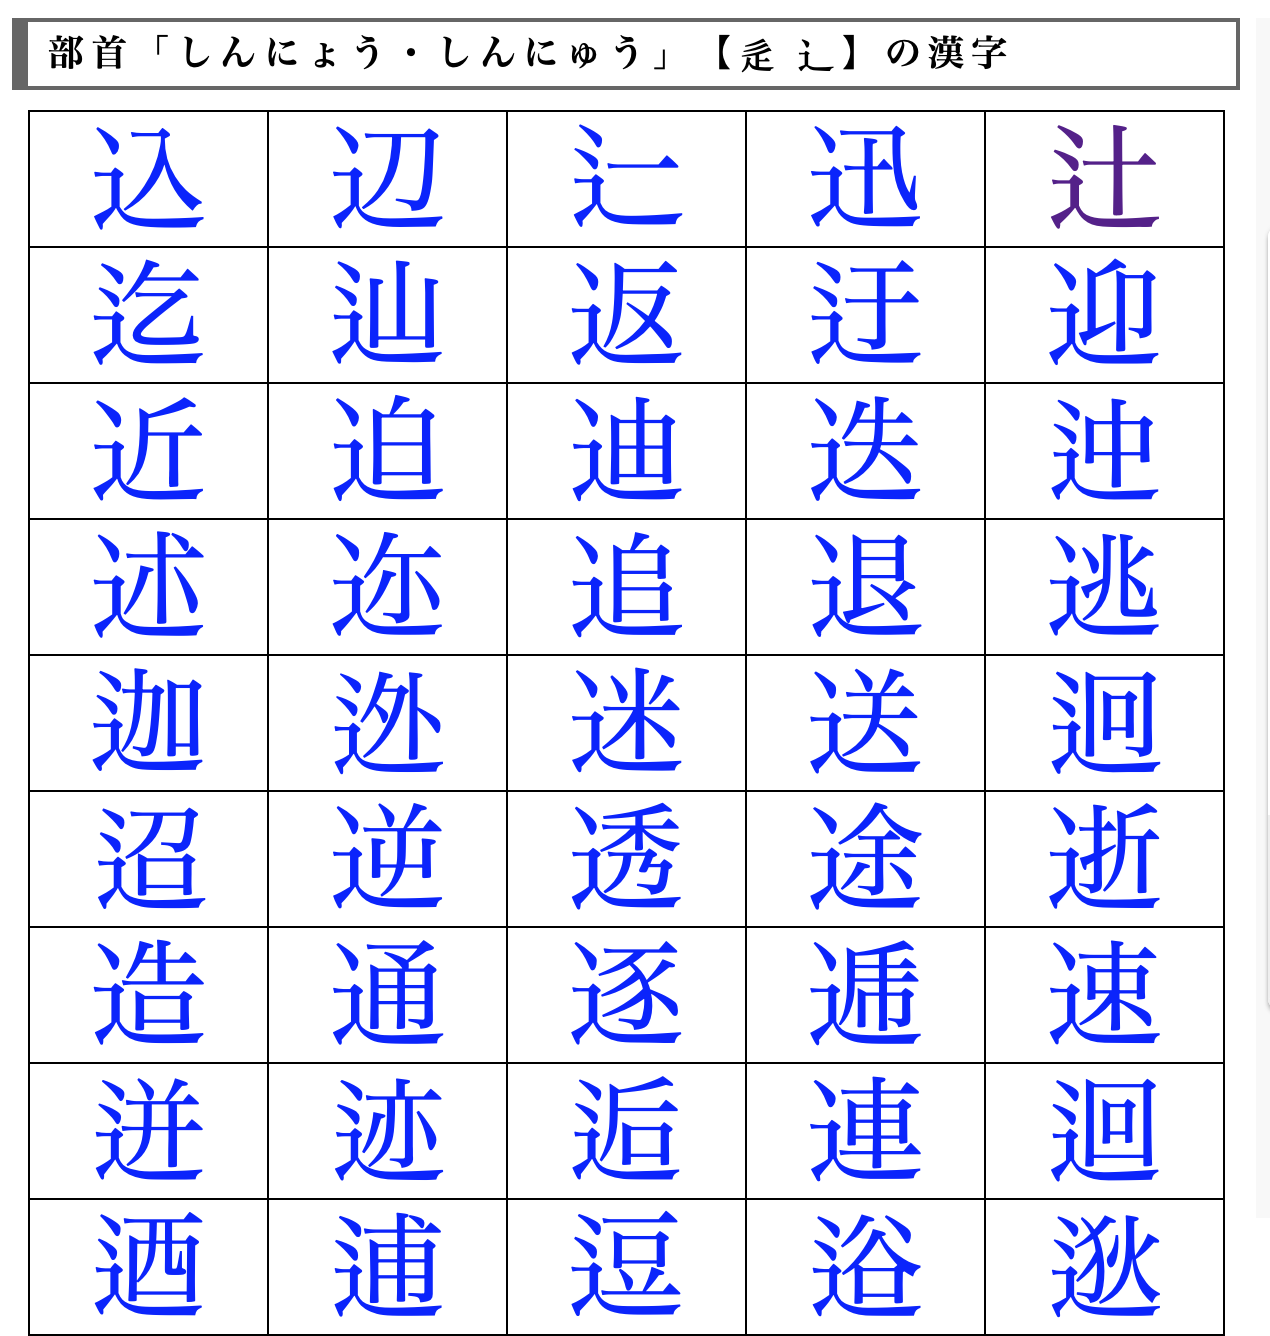 年2月16日 木 難解漢字変換のパラレルワールド 雑談ブログ